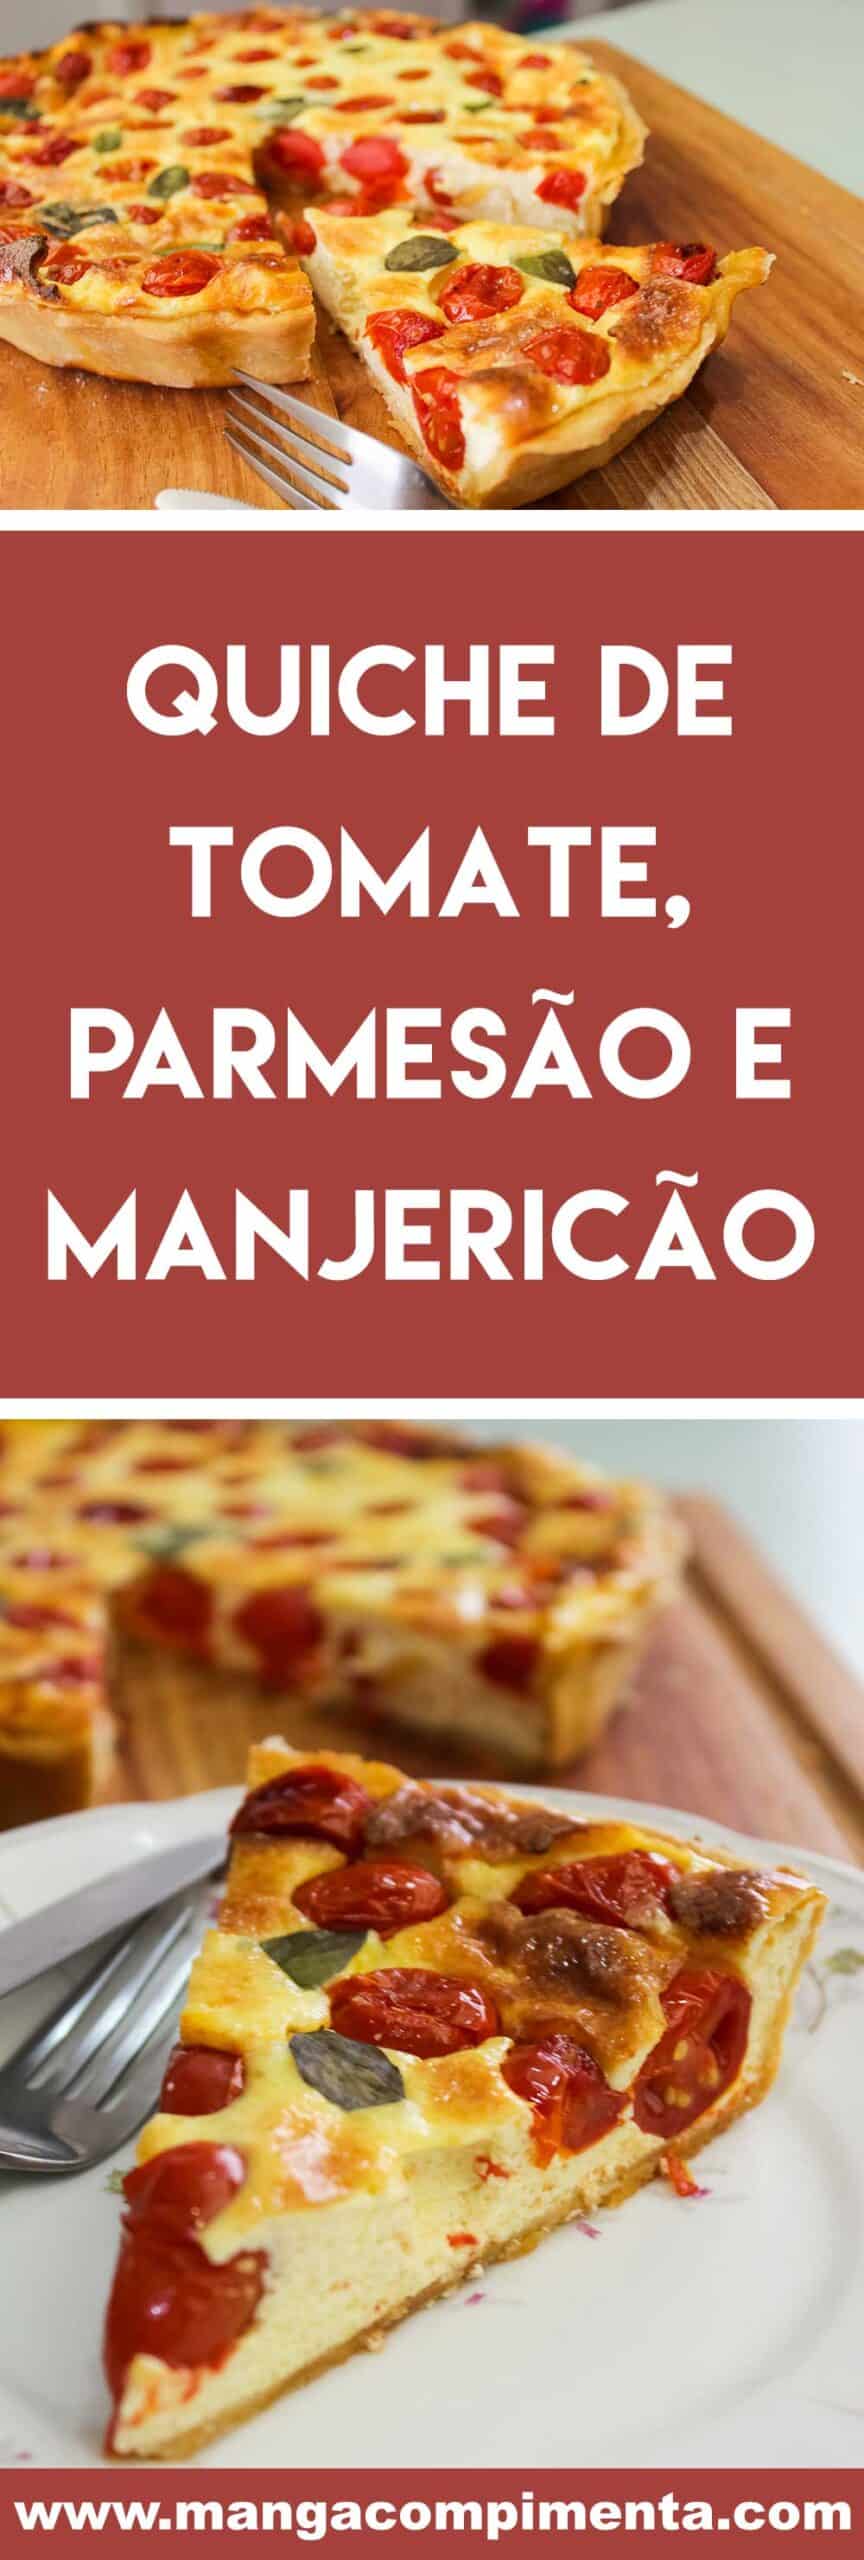 Quiche de Tomate, Parmesão e Manjericão - uma torta deliciosa para preparar em dias de festas ou para comer com uma salada nesse verão.